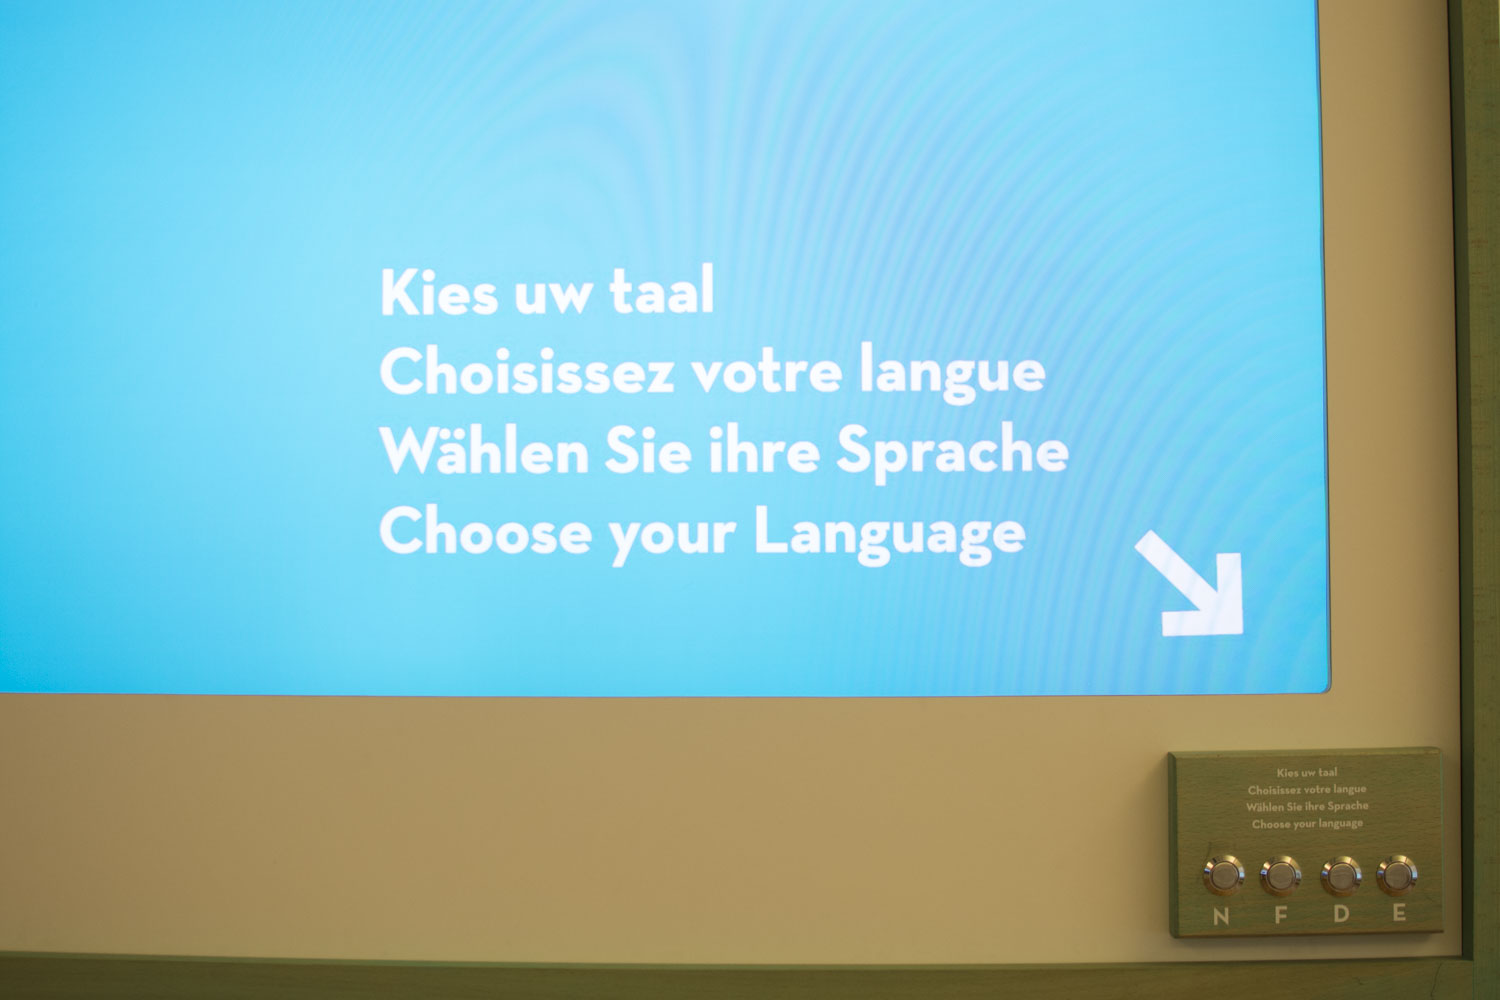 Heureusement un petit film très synthétique explique pourquoi il y a plusieurs langues. Avant de commencer, choisissez votre langue : français, néerlandais, allemand, mais aussi anglais !